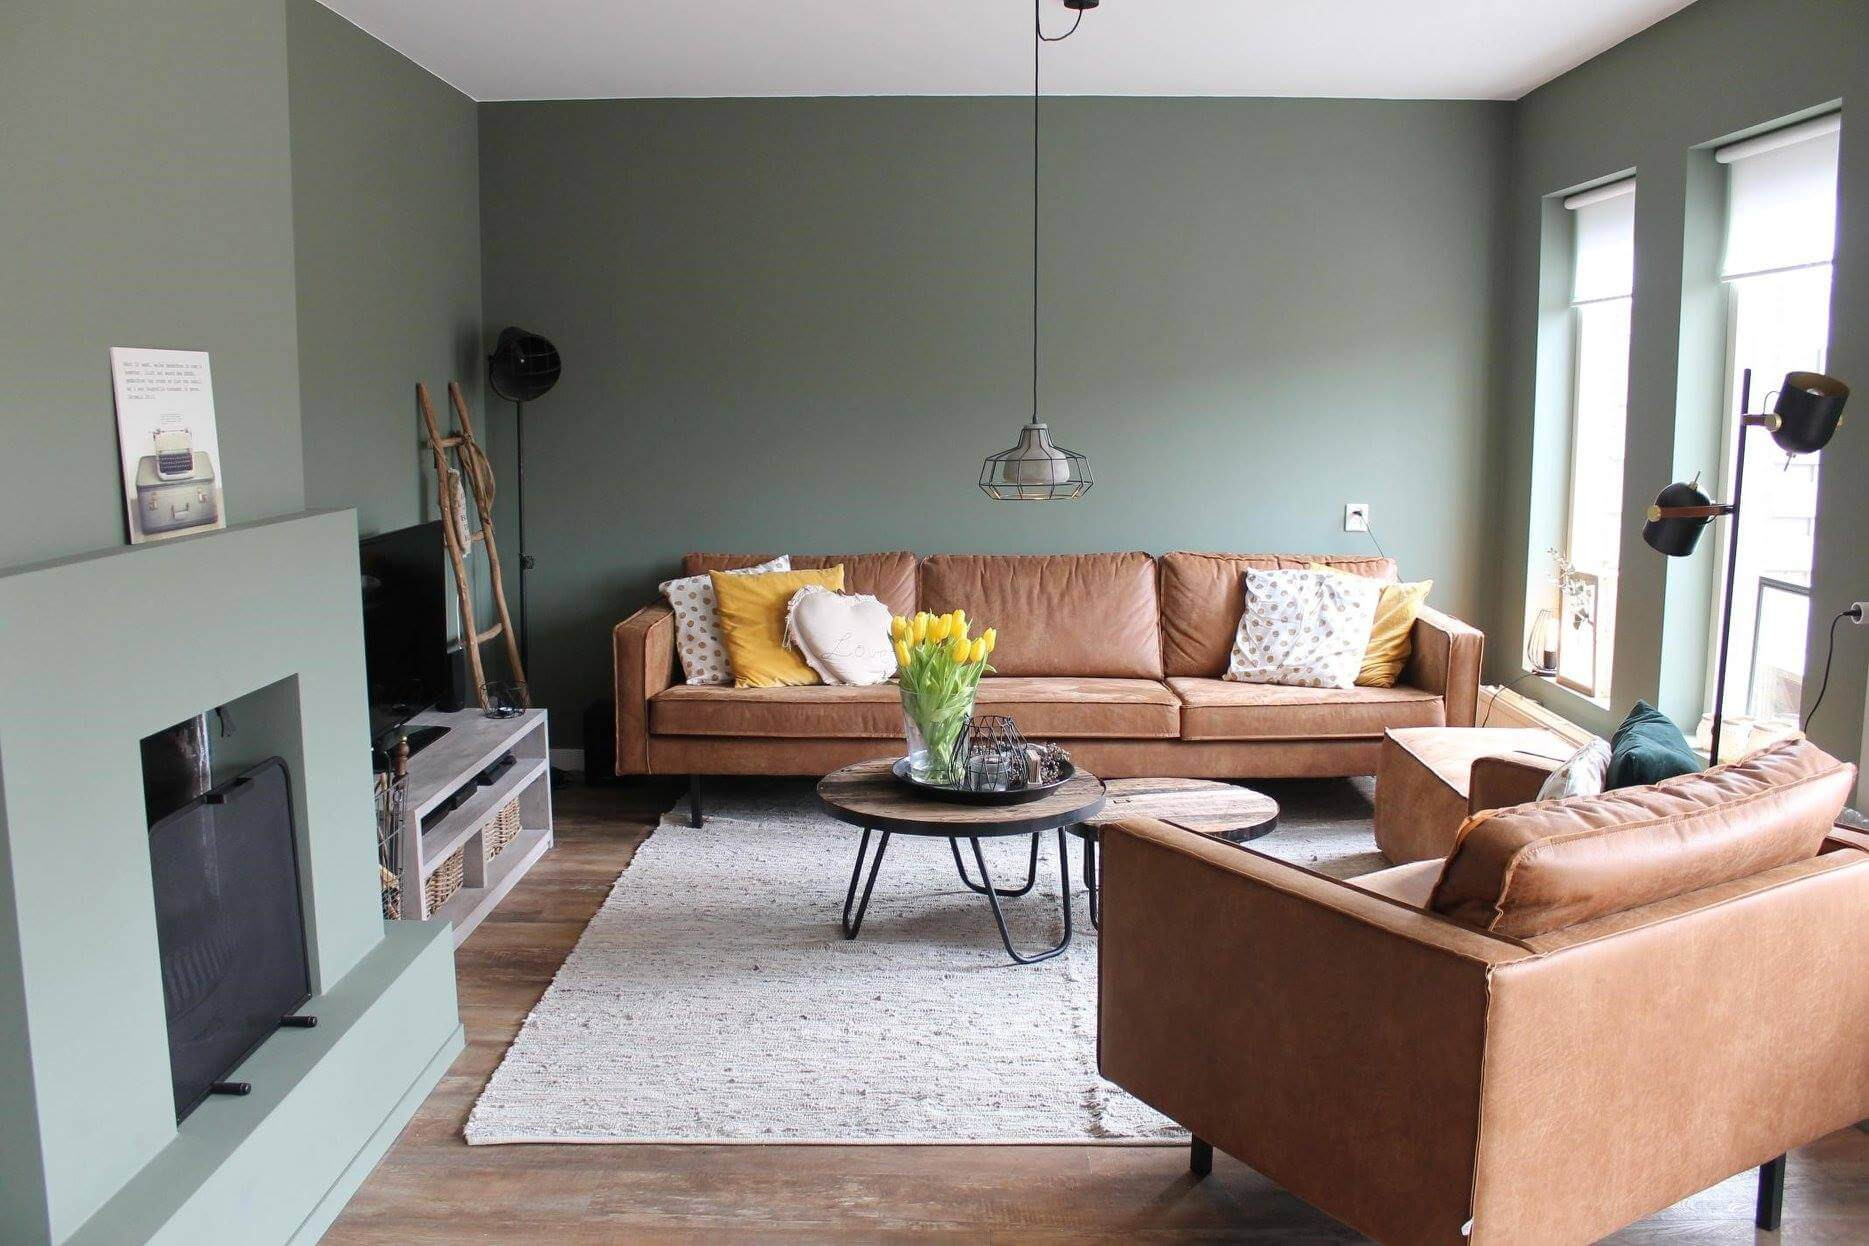 Wohnzimmer Wandgestaltung: Ideen &amp; Die Richtige Farbwahl! intended for Wandgestaltung Wohnzimmer Farbe